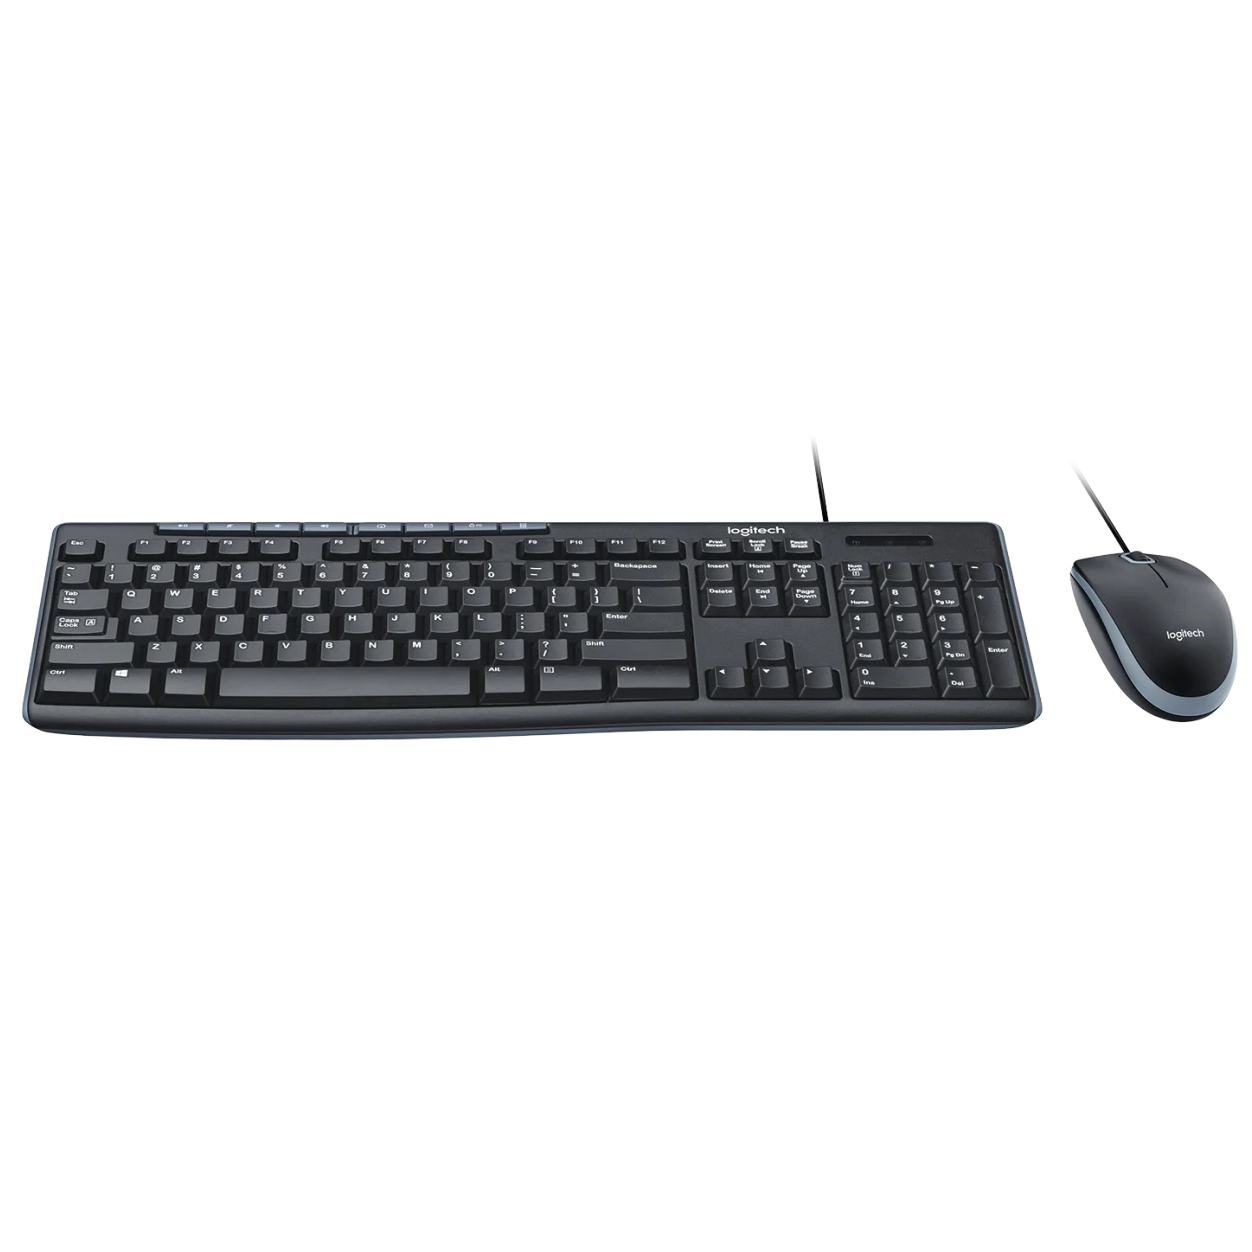 Фото — Комплект (клавиатура и мышь) Logitech MK200, черный